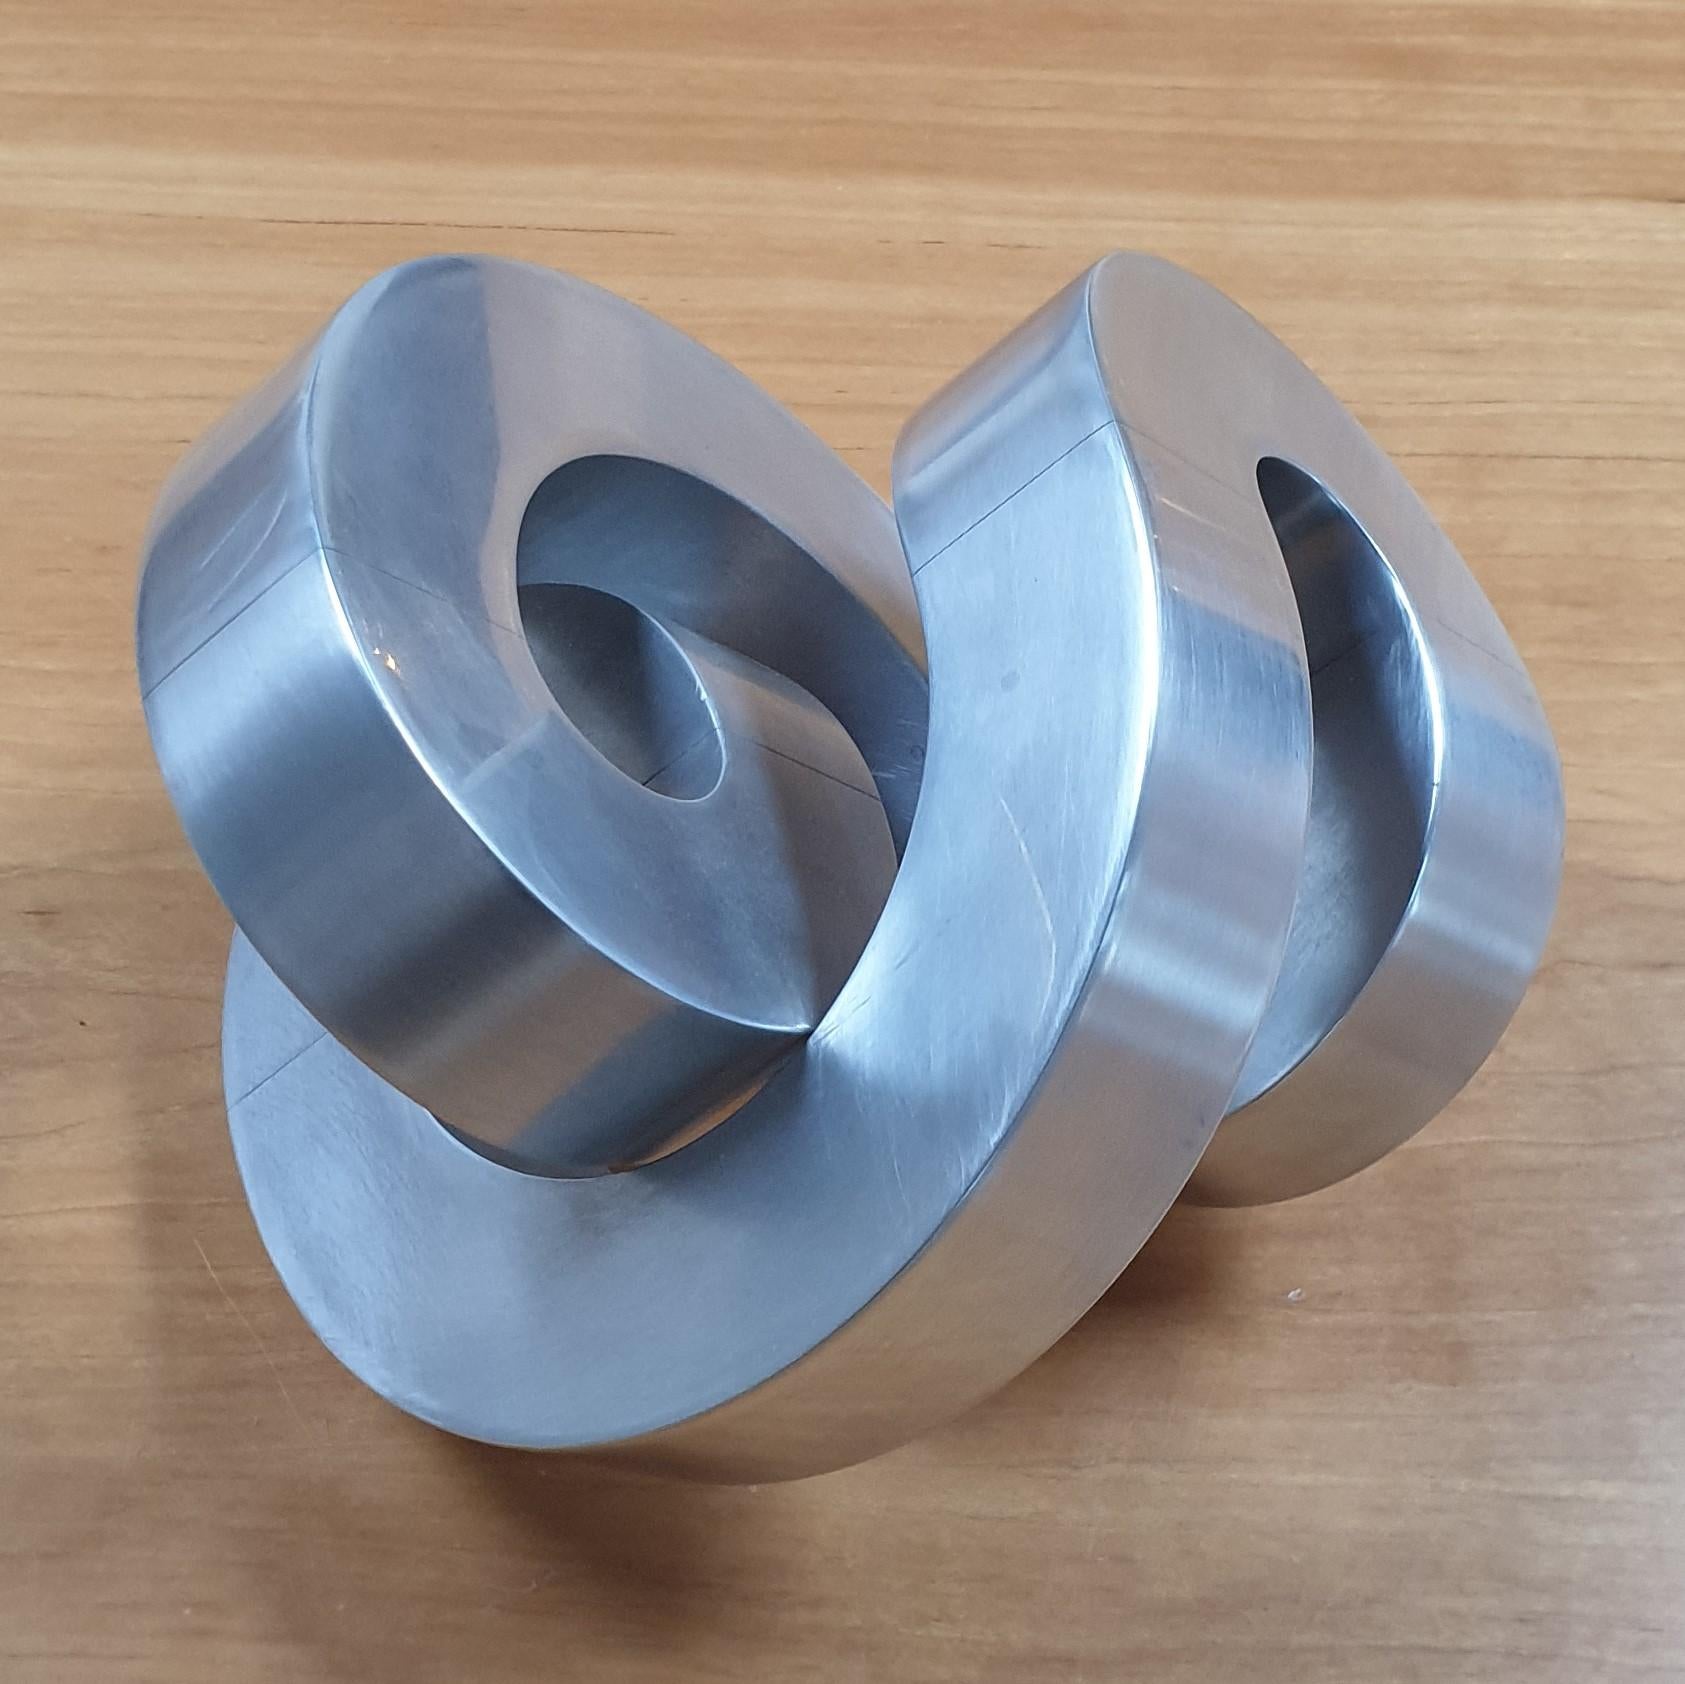 Rondeau - aluminum contemporary modern abstract geometric sculpture - Constructivist Sculpture by Henk van Putten